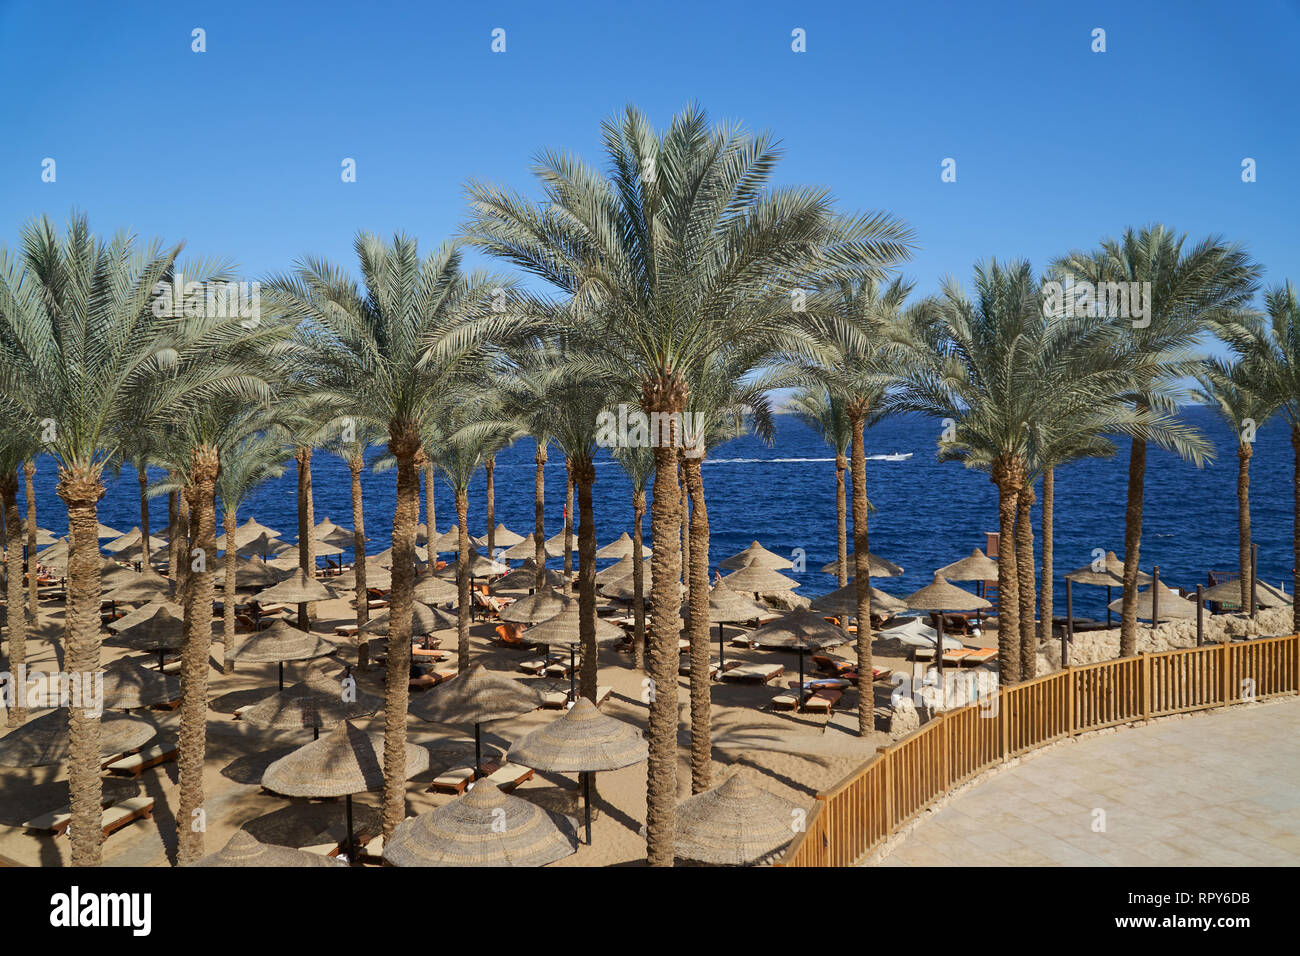 Estate sdraio sotto un ombrello di sabbia sul mare spiaggia e palme in hotel Egitto Sharm el Sheikh, il concetto di tempo per viaggiare Foto Stock